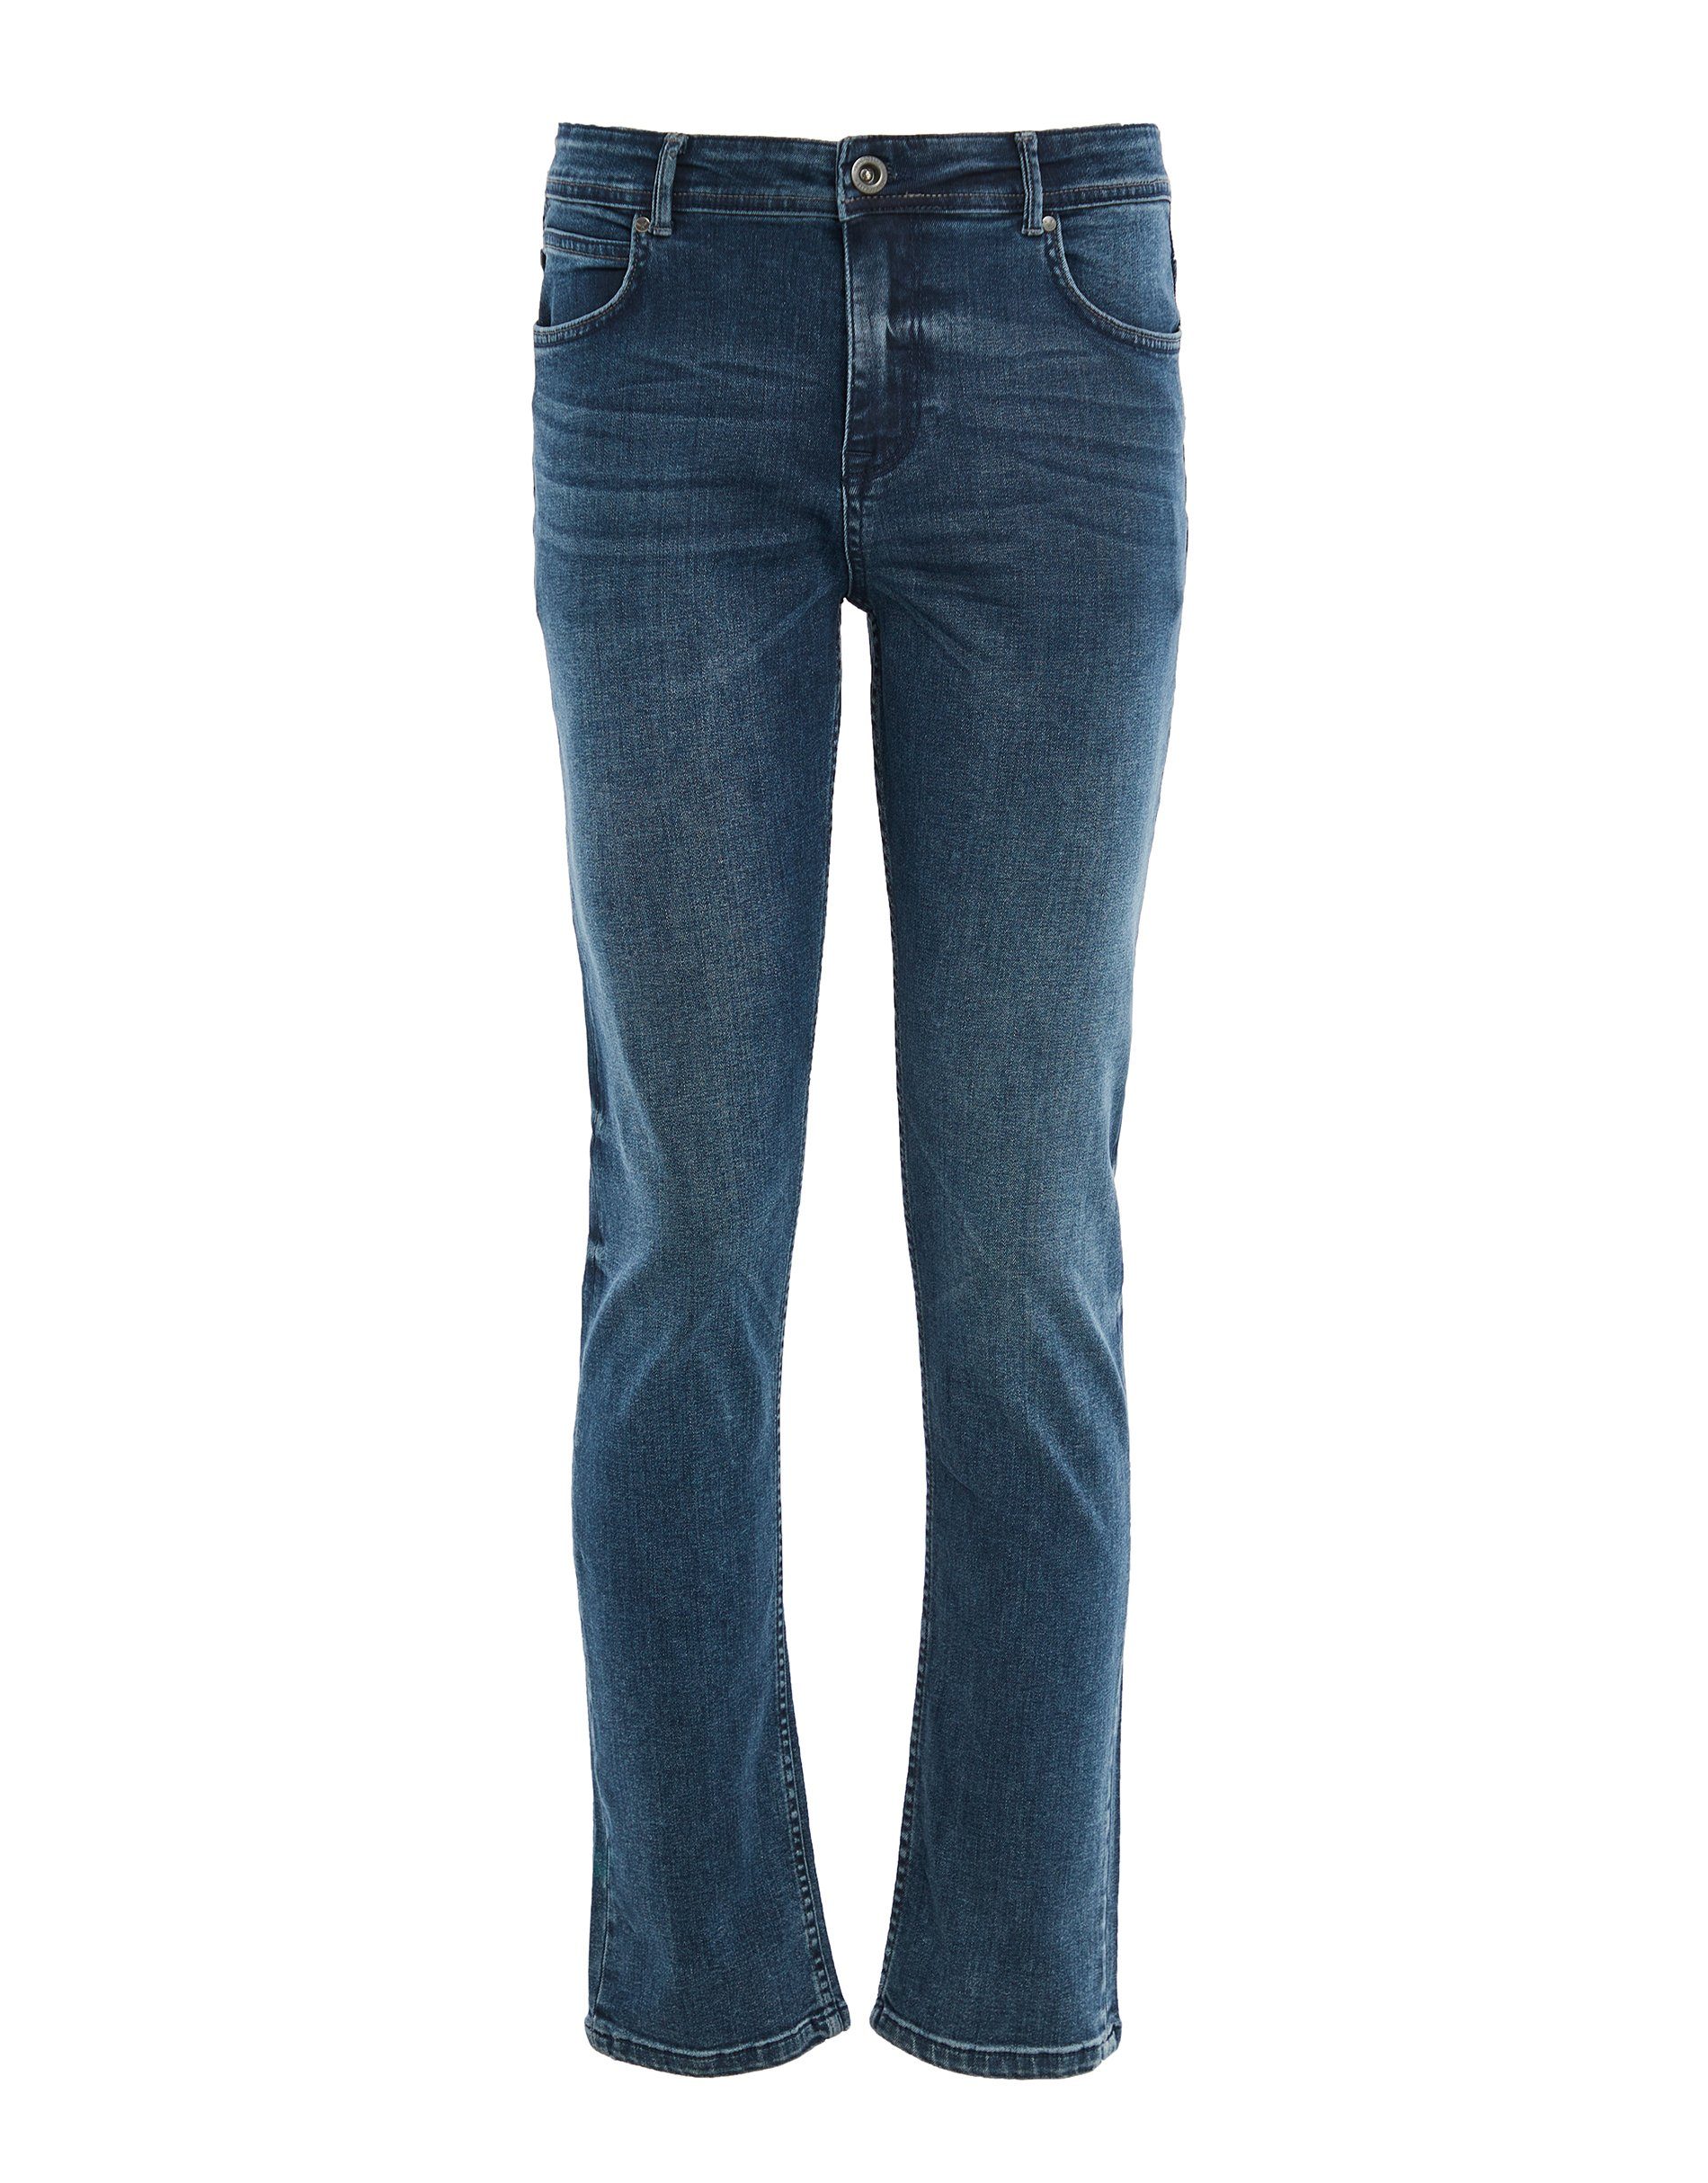 5 5-Pocket-Jeans Pkt blue THBLancaster Threadbare Fit mid Slim